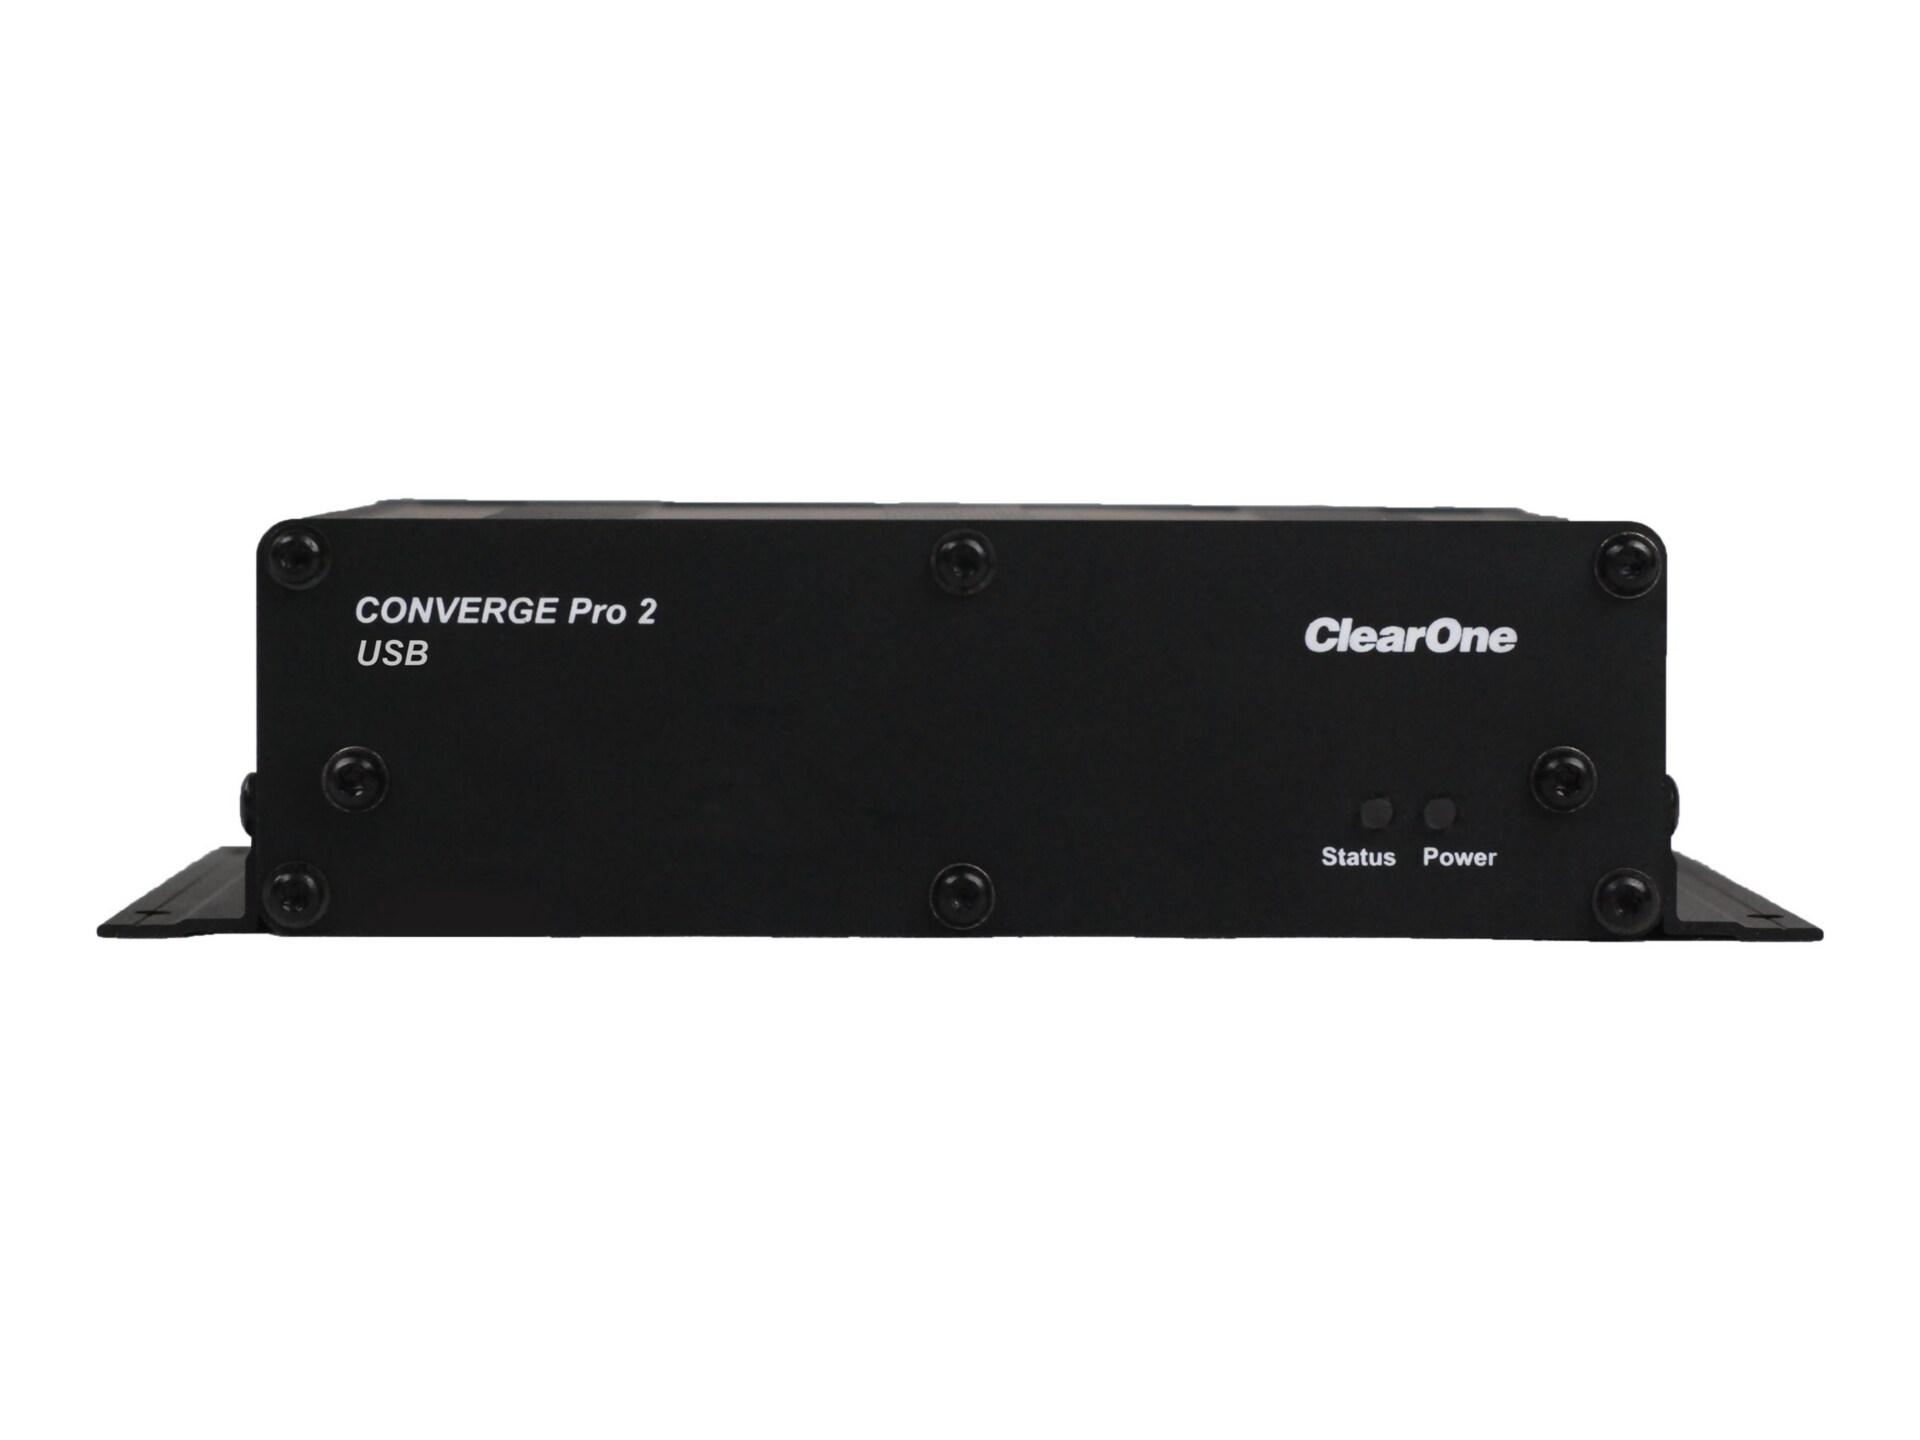 ClearOne Converge Pro 2 USB expanseur audio multi-pièces